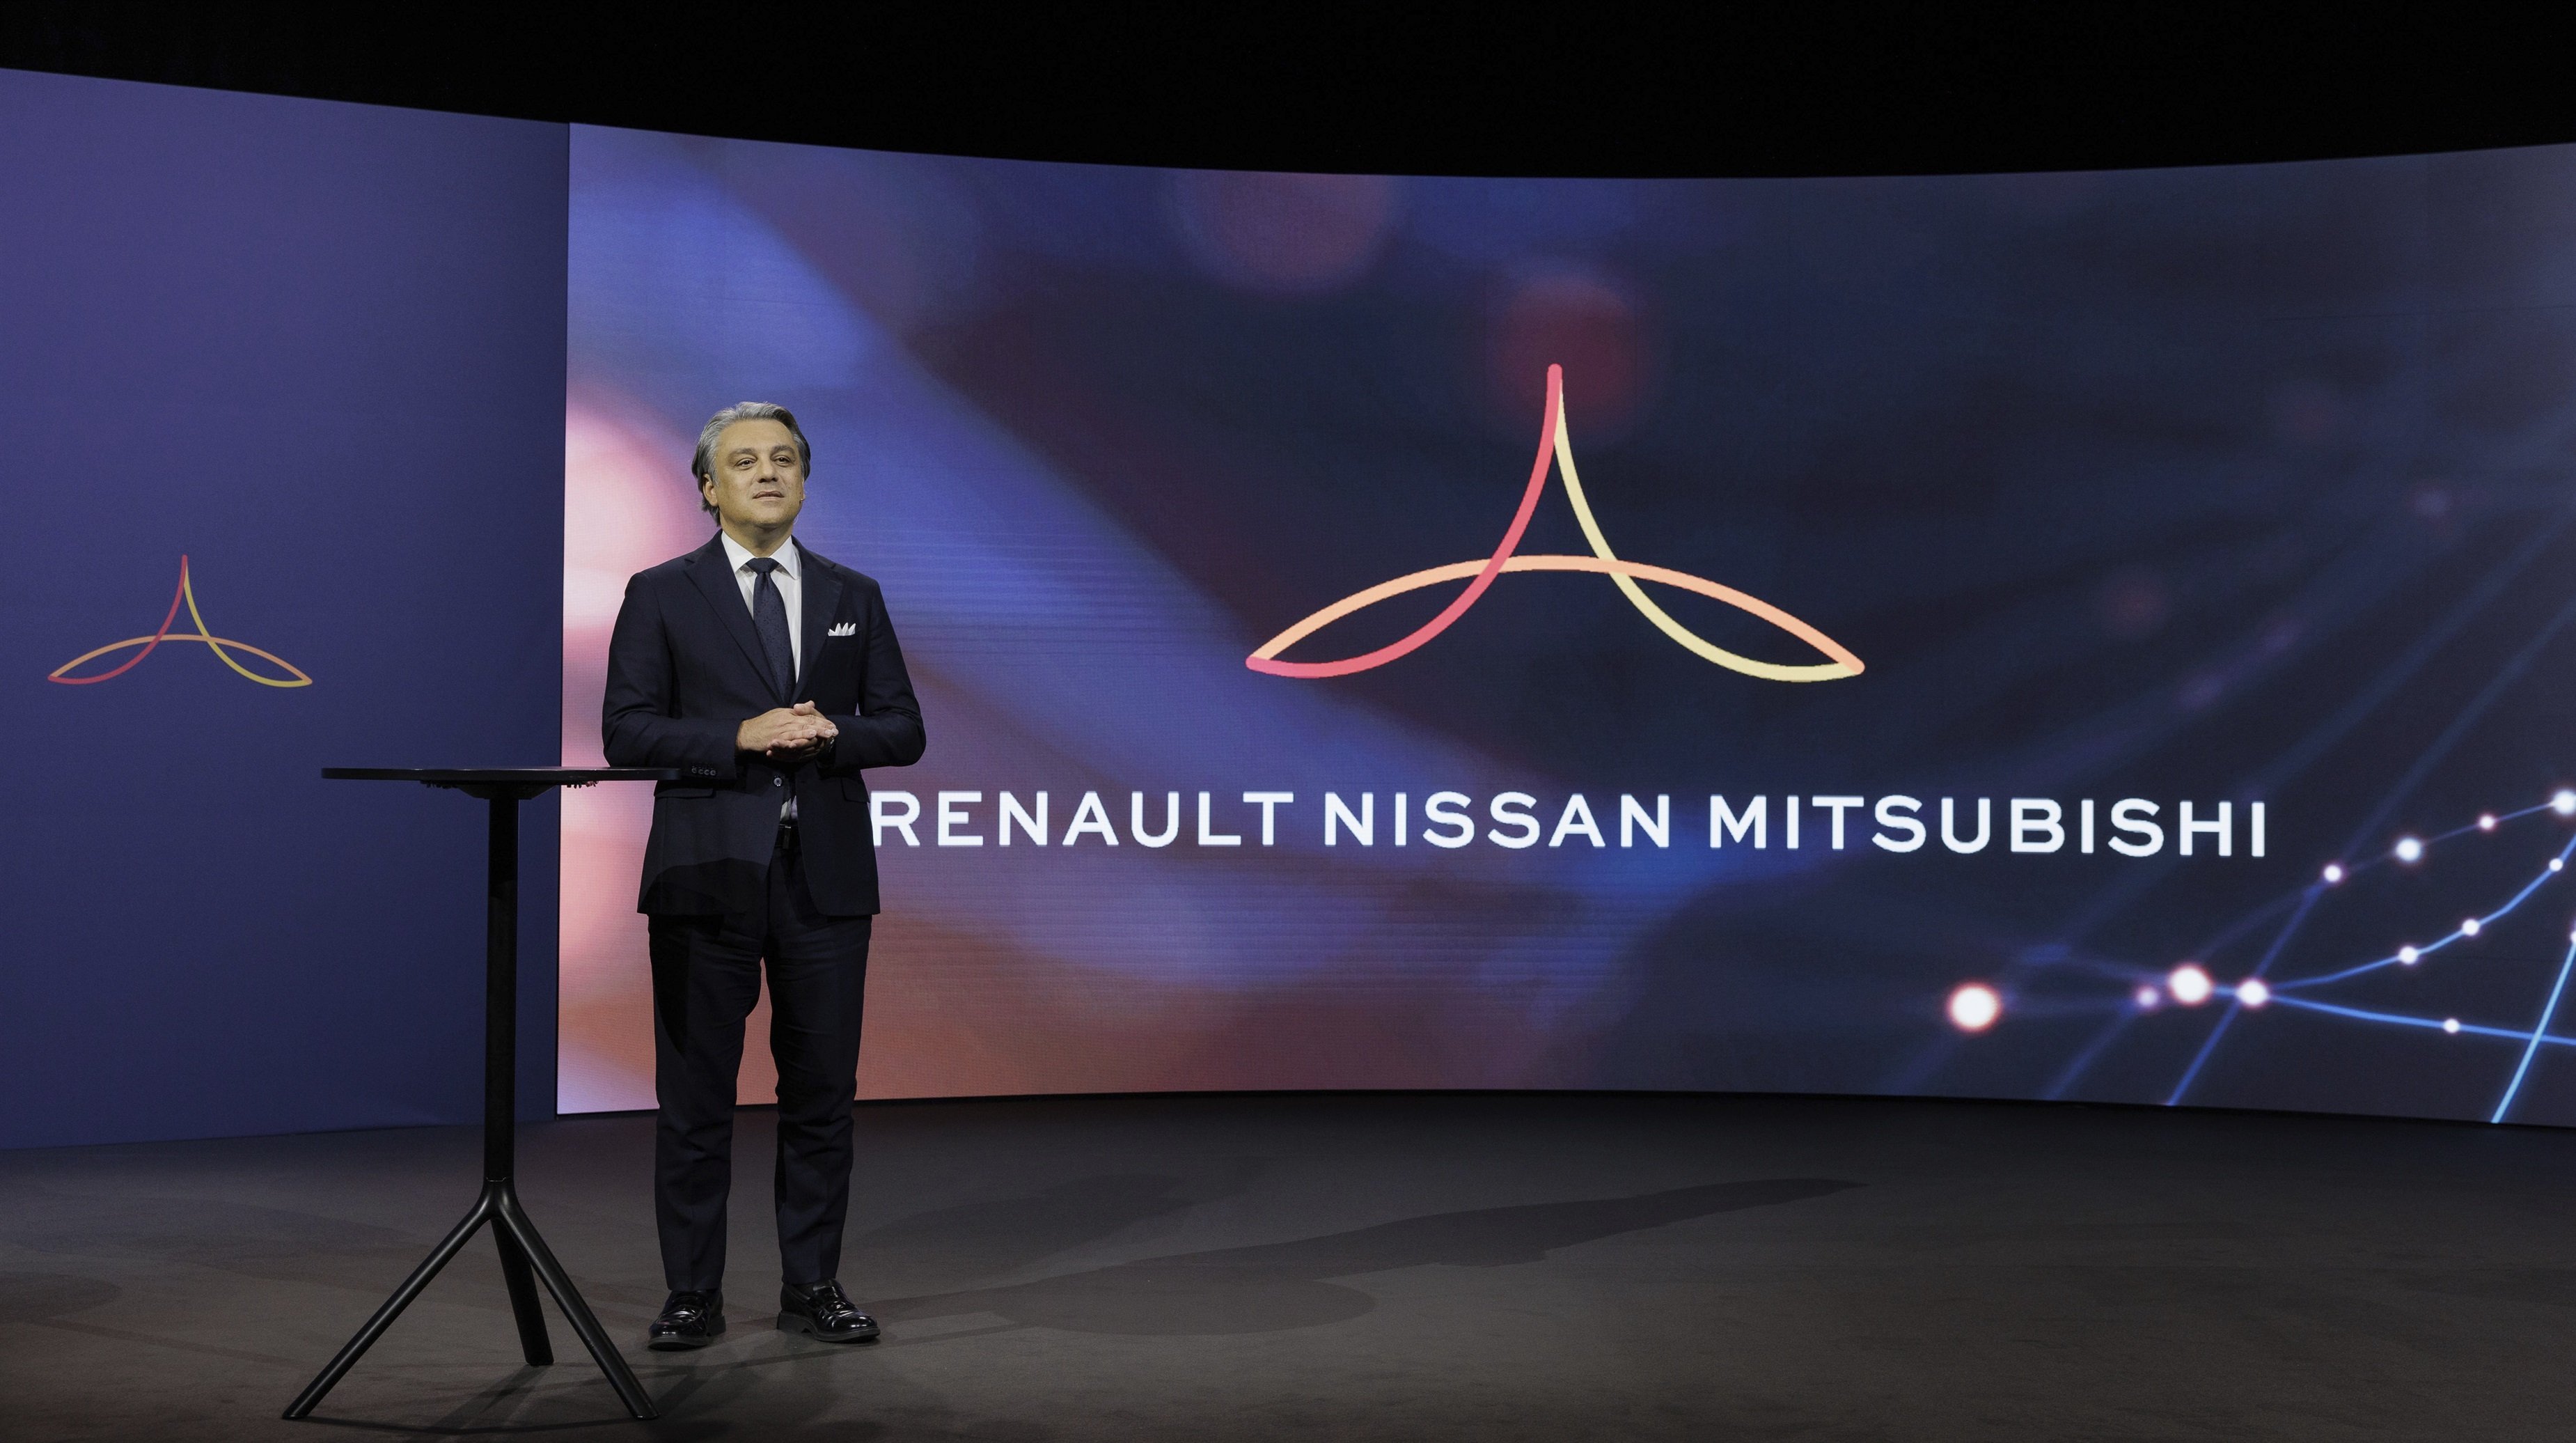 Nissan y Renault abren “una nueva era” en su relación en la que buscarán nuevos proyectos conjuntos - Luca de Medo, CEO de Renault